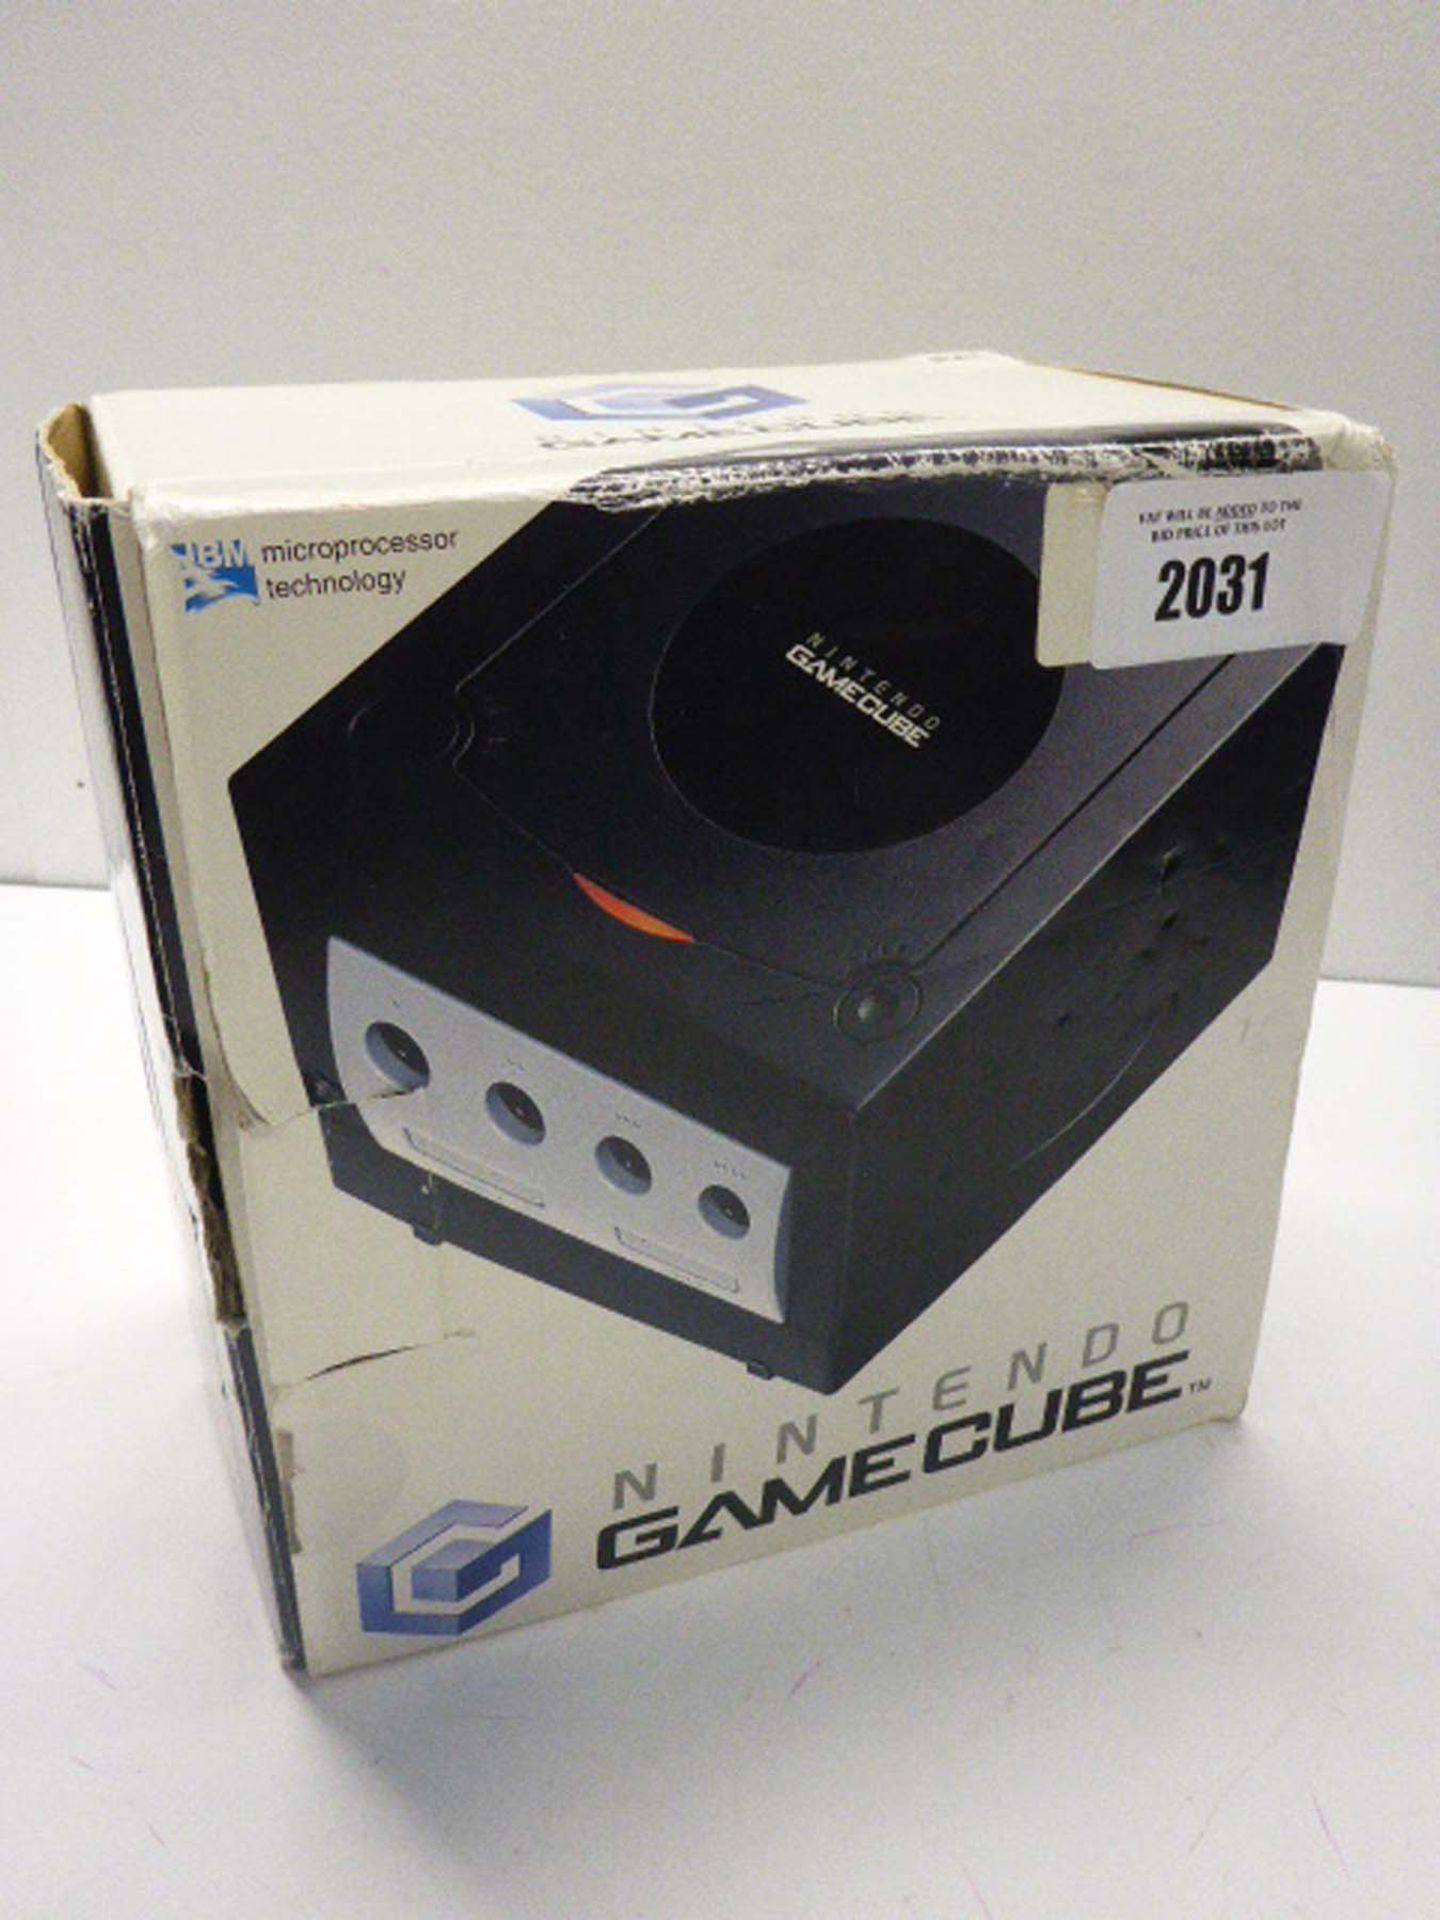 Ninitendo GameCube Console with box and Psu.